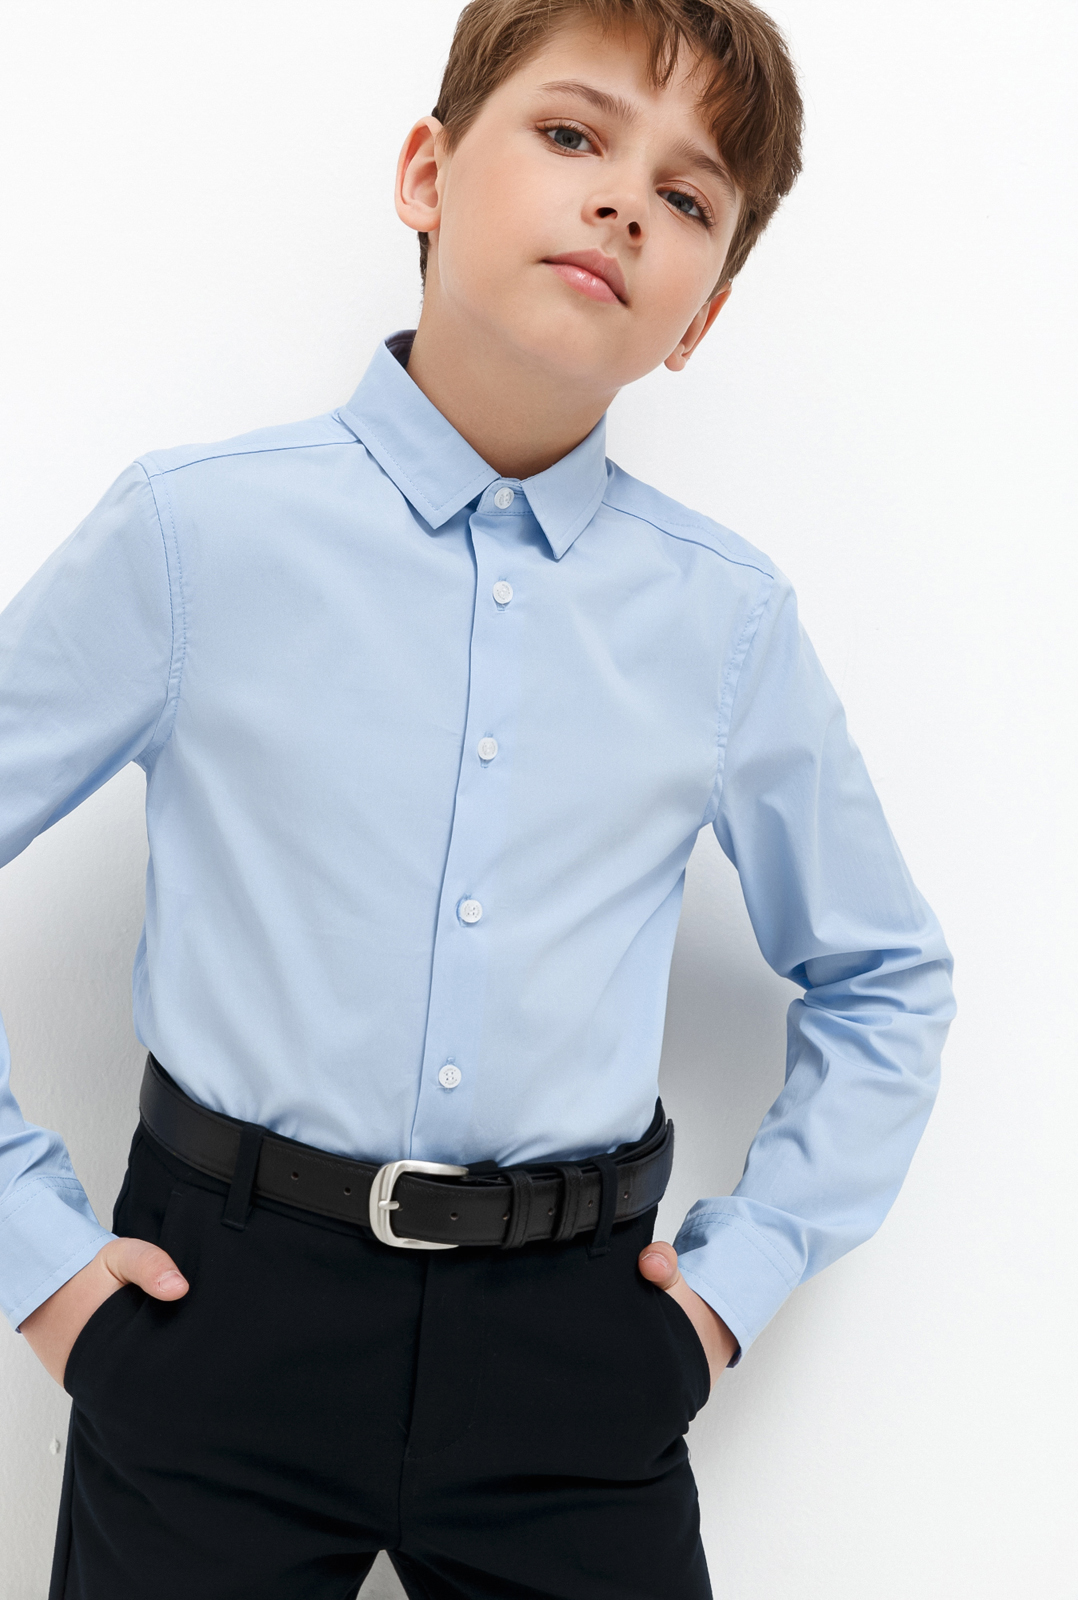 Рубашка для мальчика Acoola Houston, цвет: голубой. 20140280033_400. Размер 158